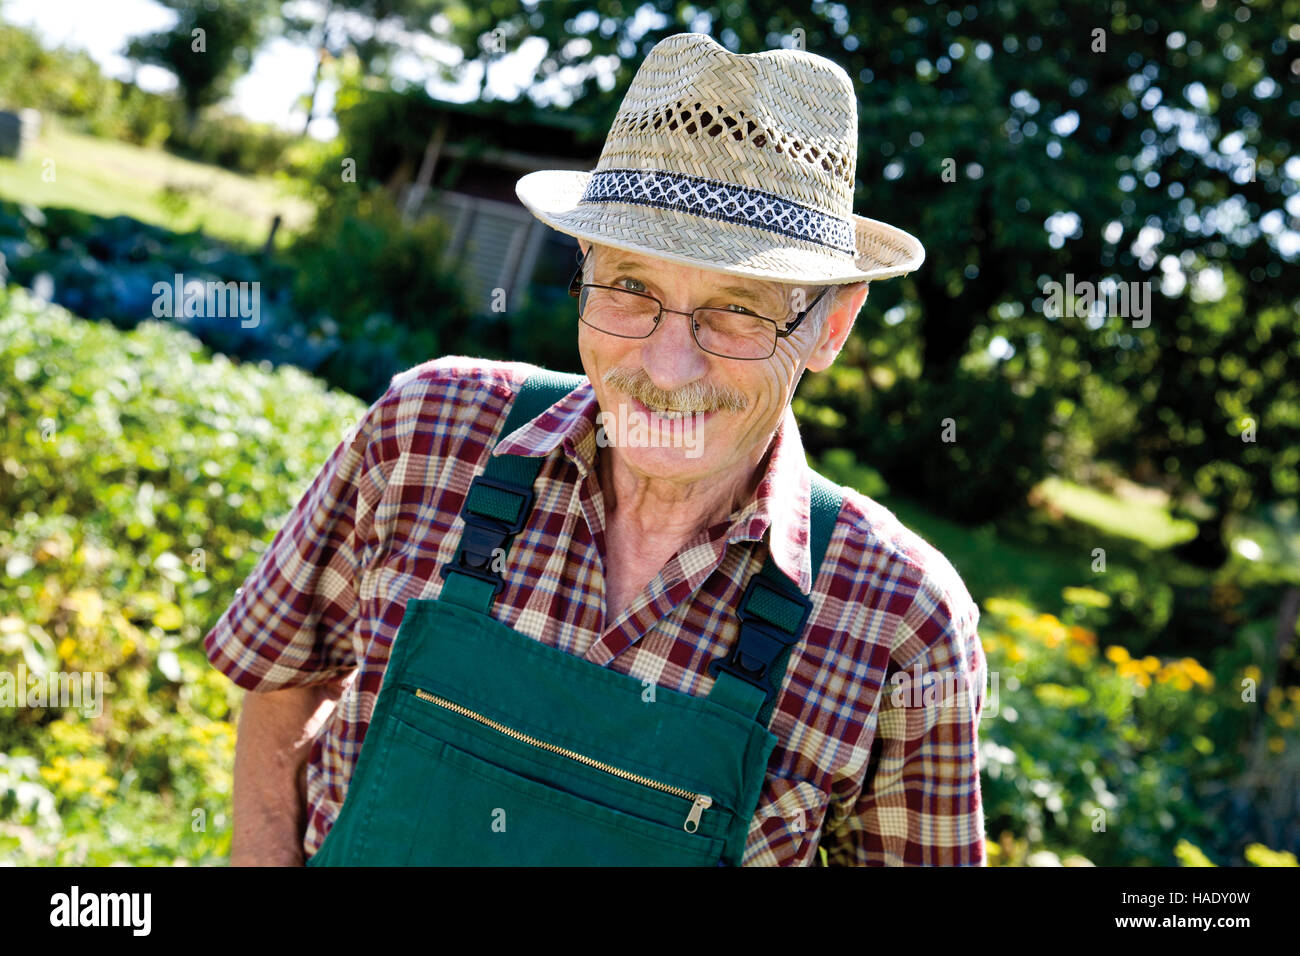 Proud gardener in his garden Stock Photo